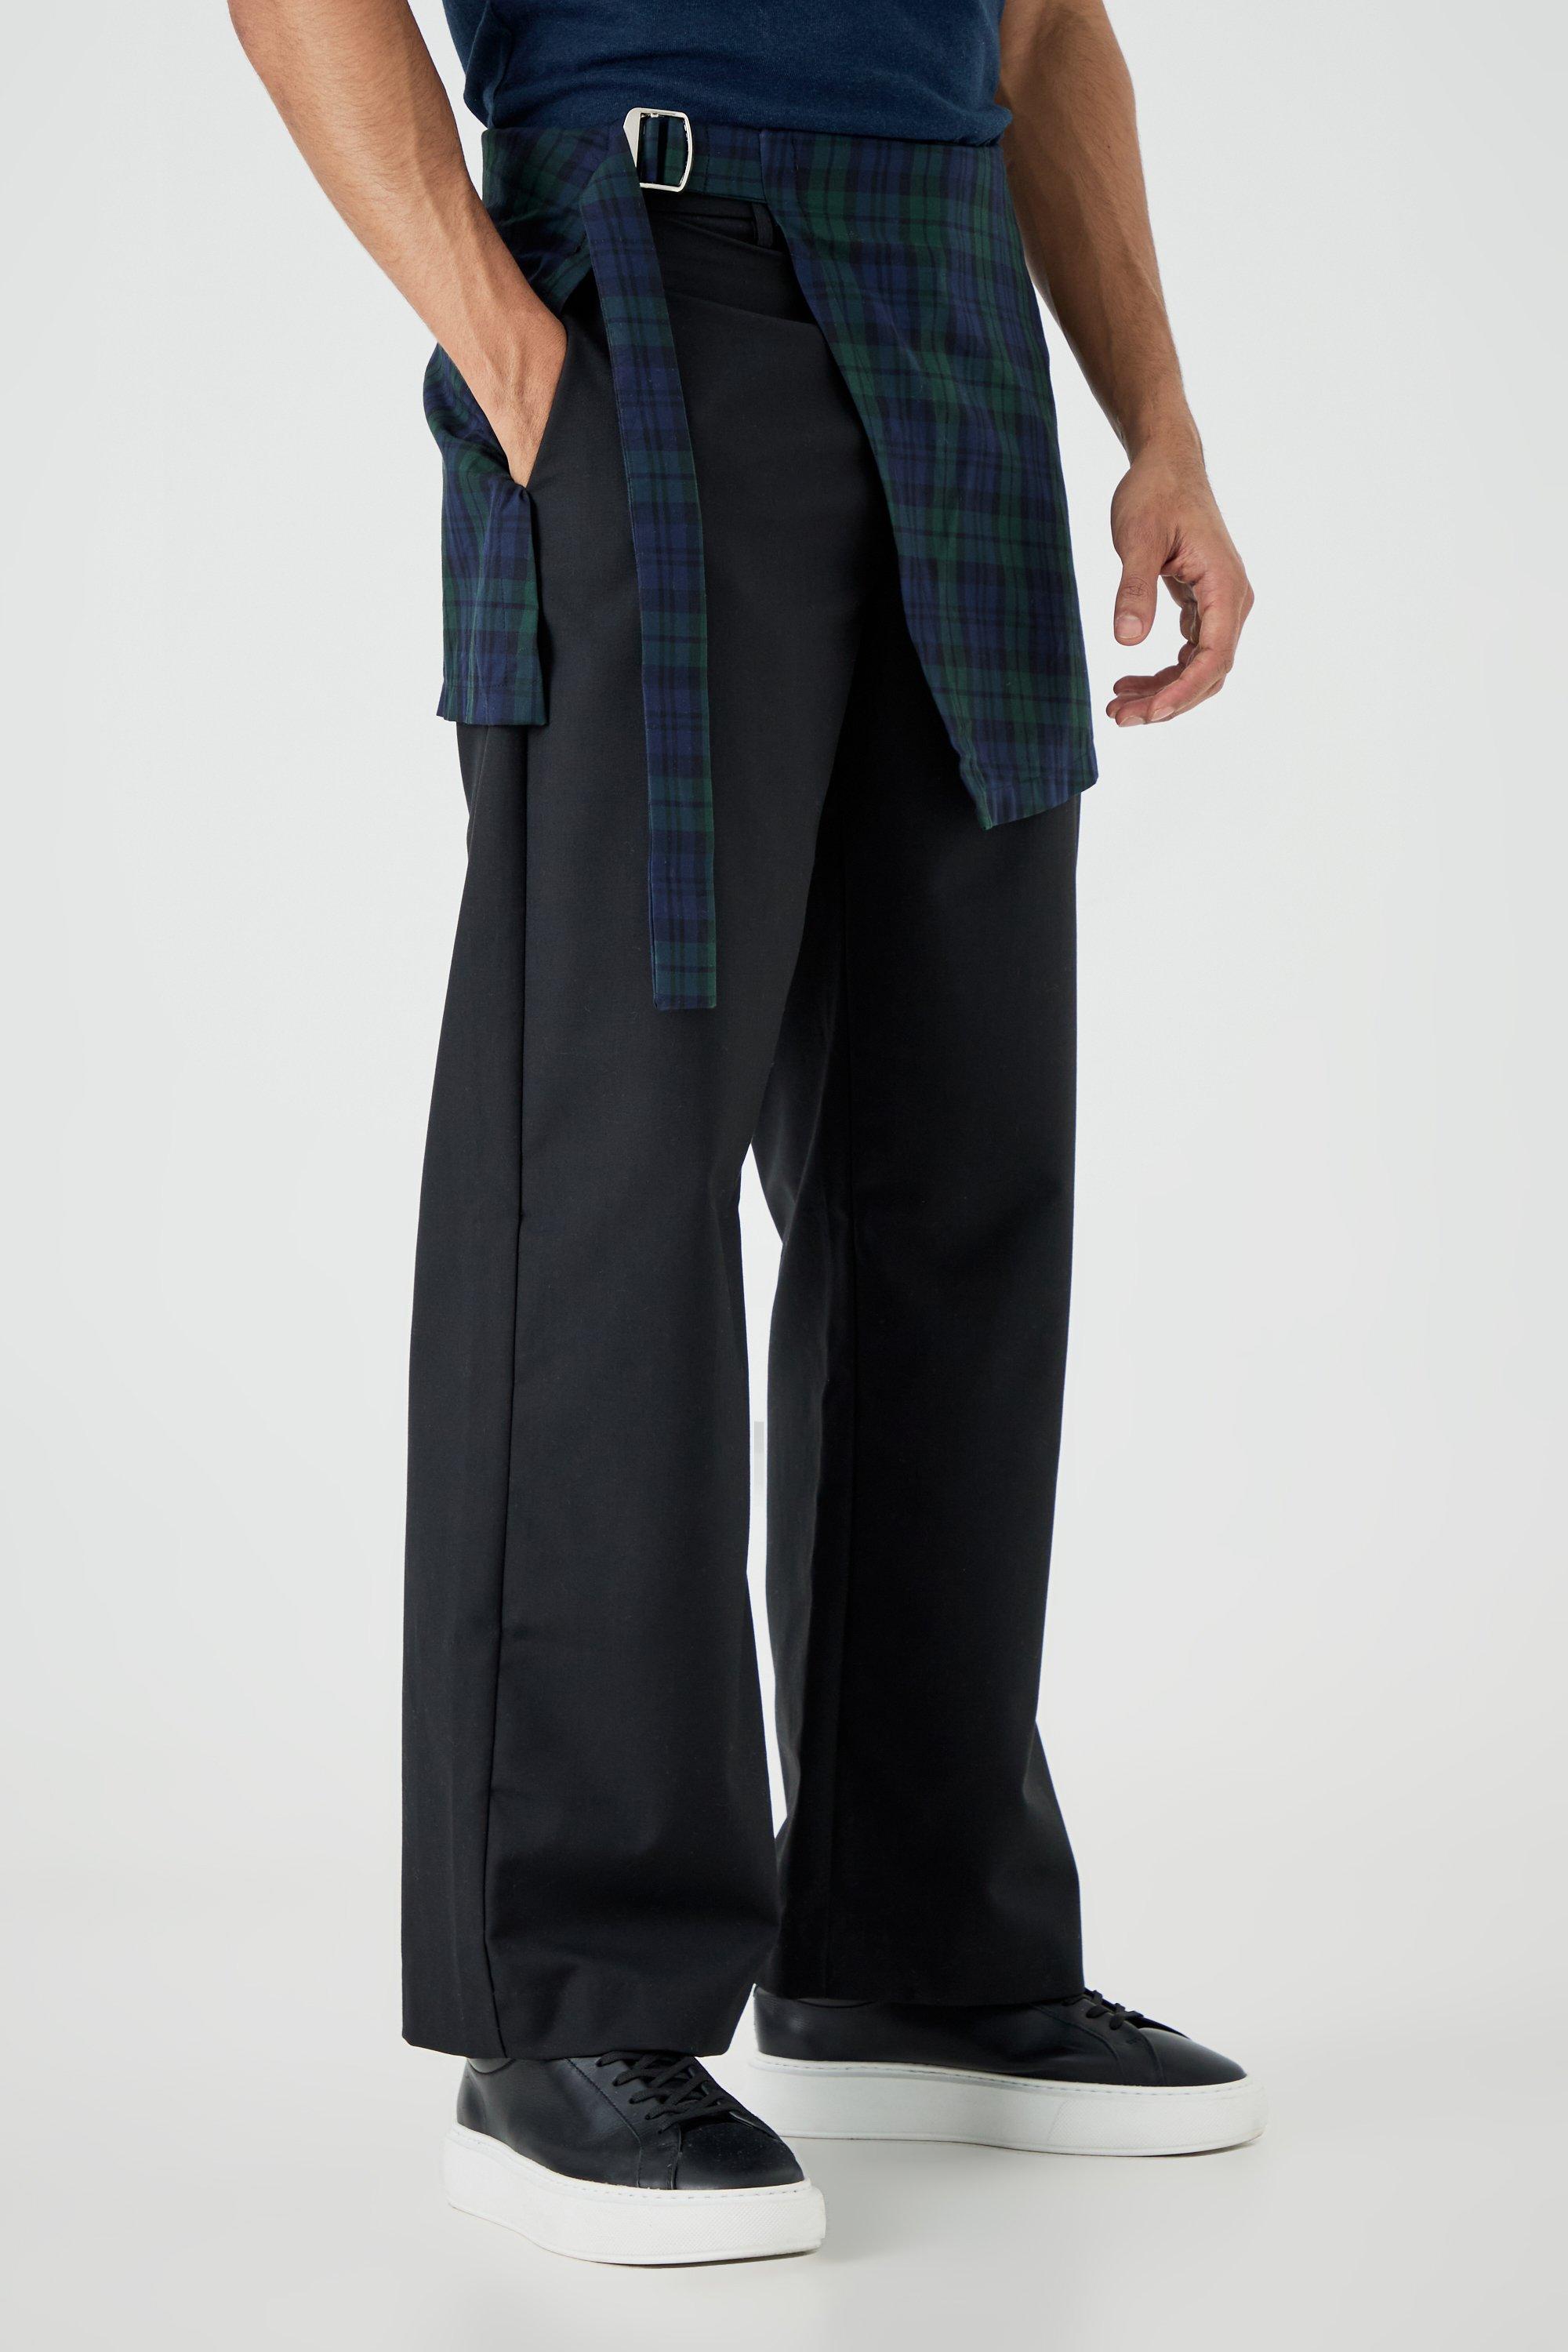 pantalon de tailleur à carreaux homme - noir - 28, noir